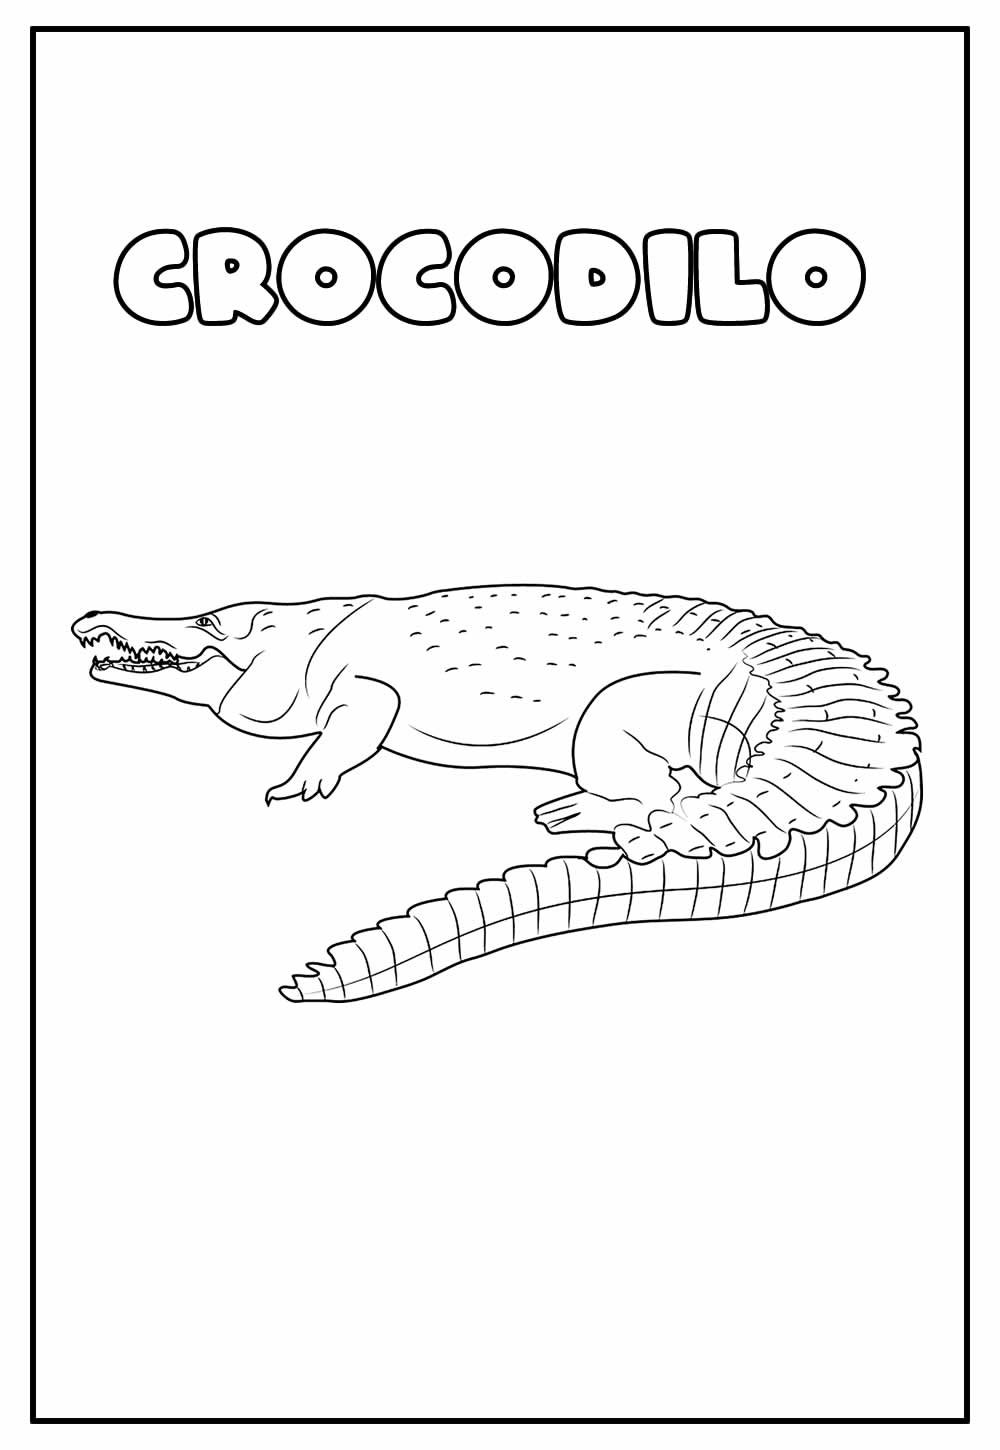 Desenho Educativo de Crocodilo para colorir